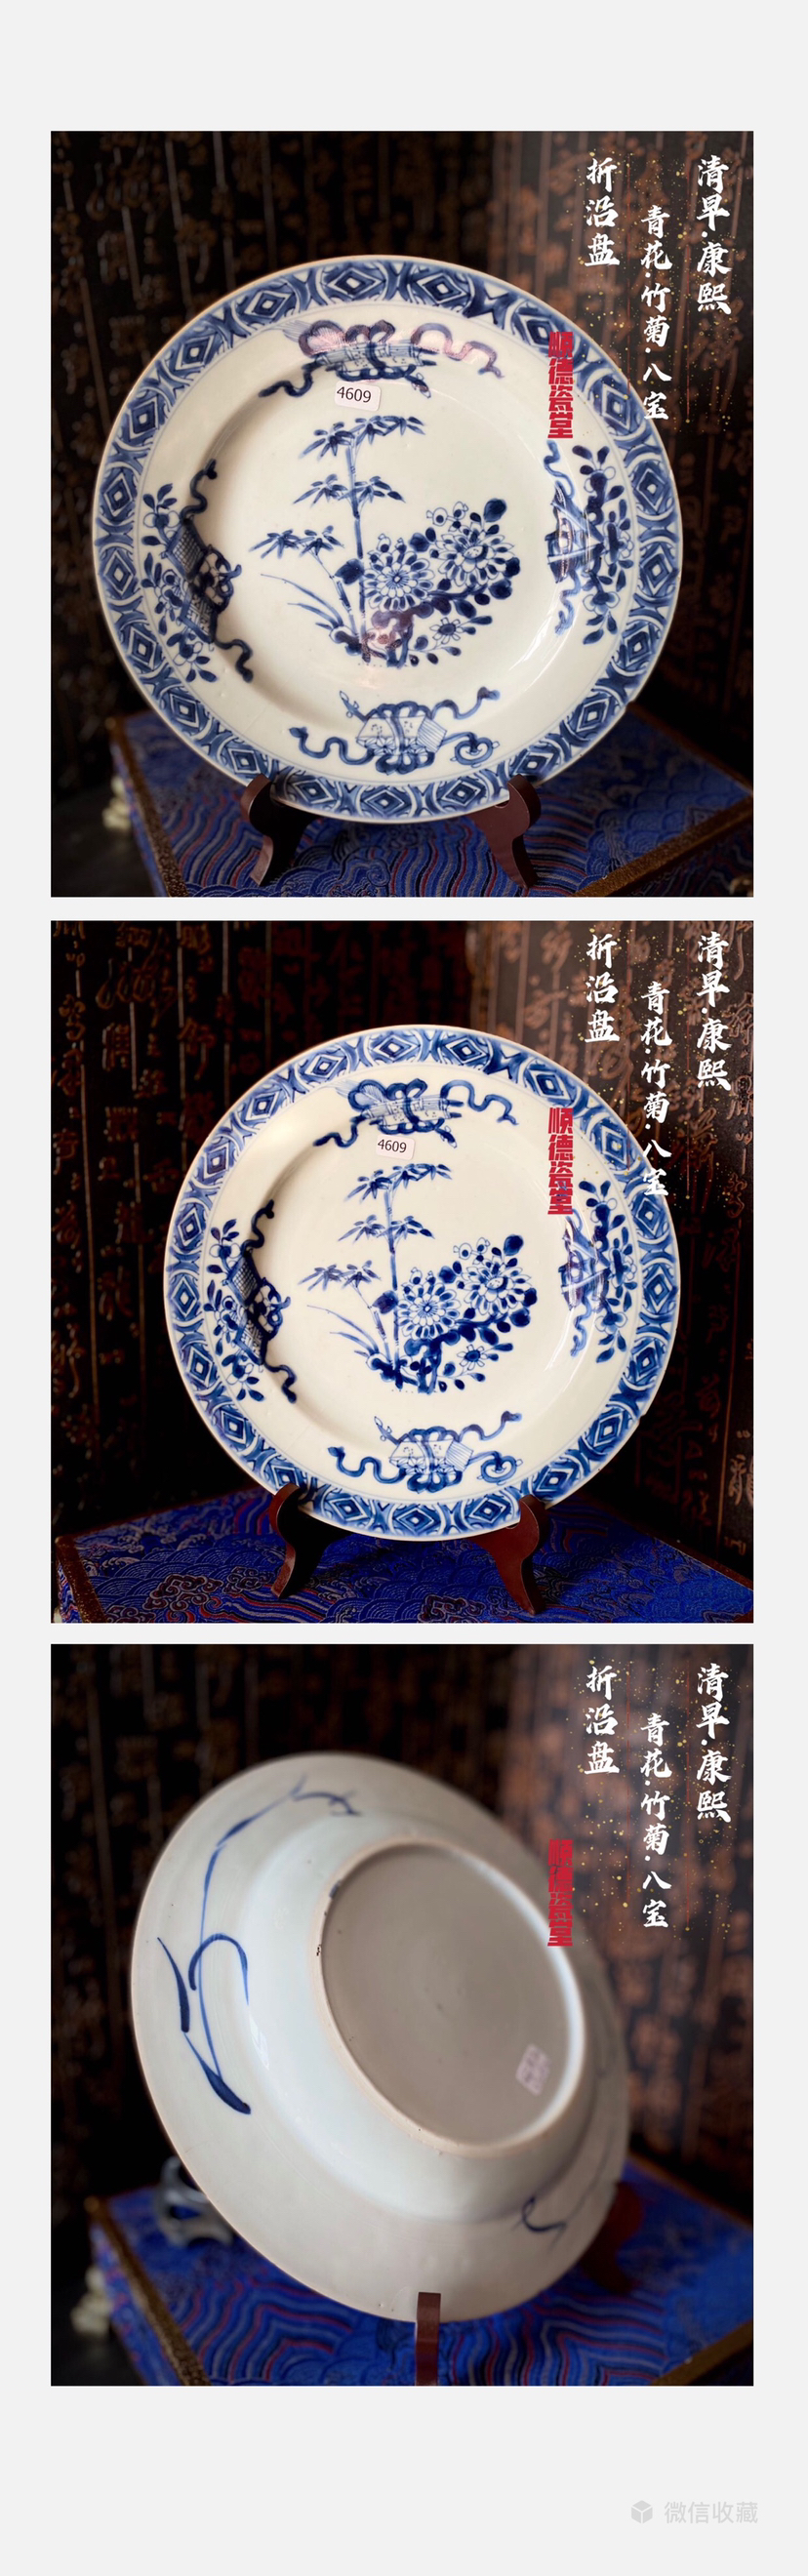 中国 大清康煕年製 青花蓮花文 透蛍手蓋茶碗 M R5197-